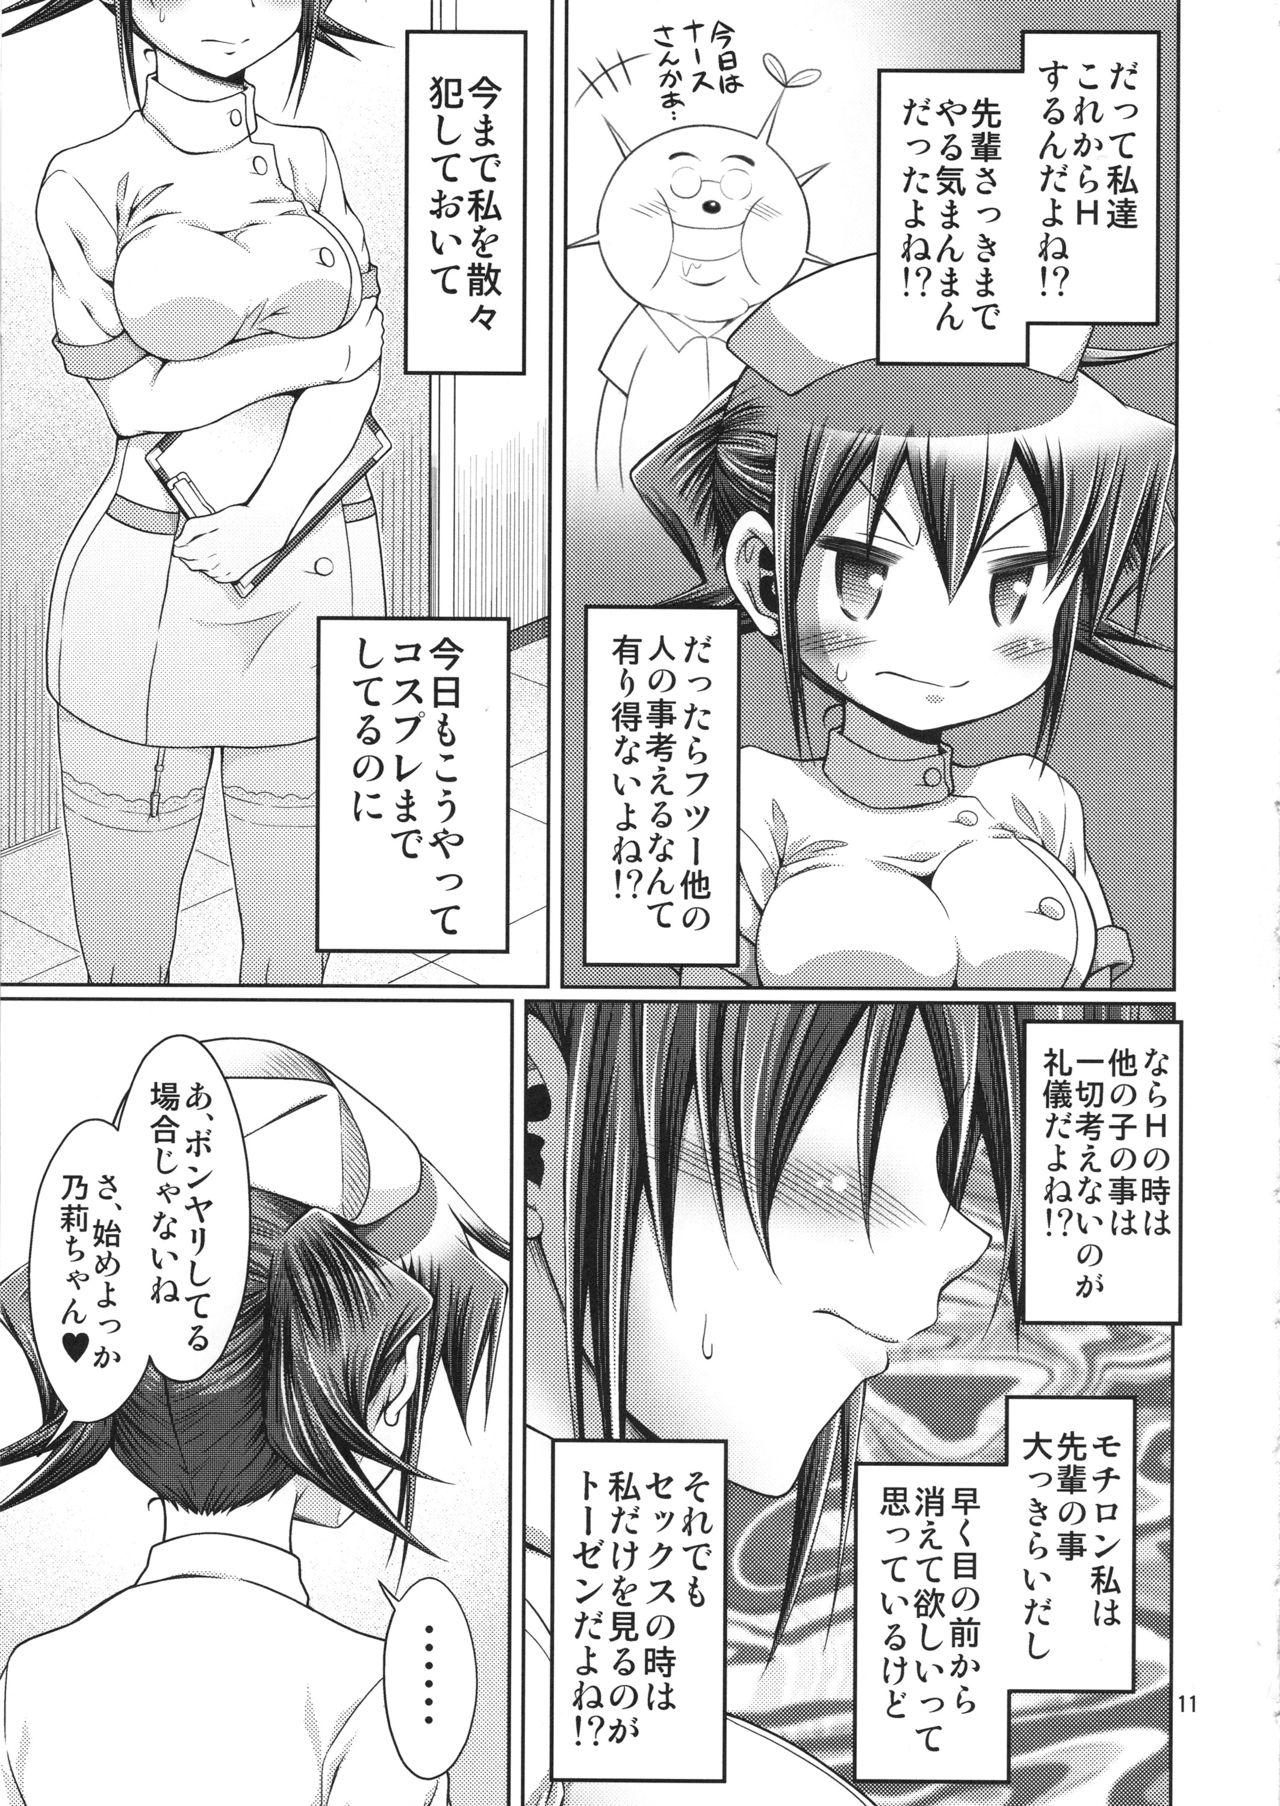 Usa IT Shoujo N Tokubetsuhen 10 Nori-chan no Oppai Kinenbi - Hidamari sketch Star - Page 10